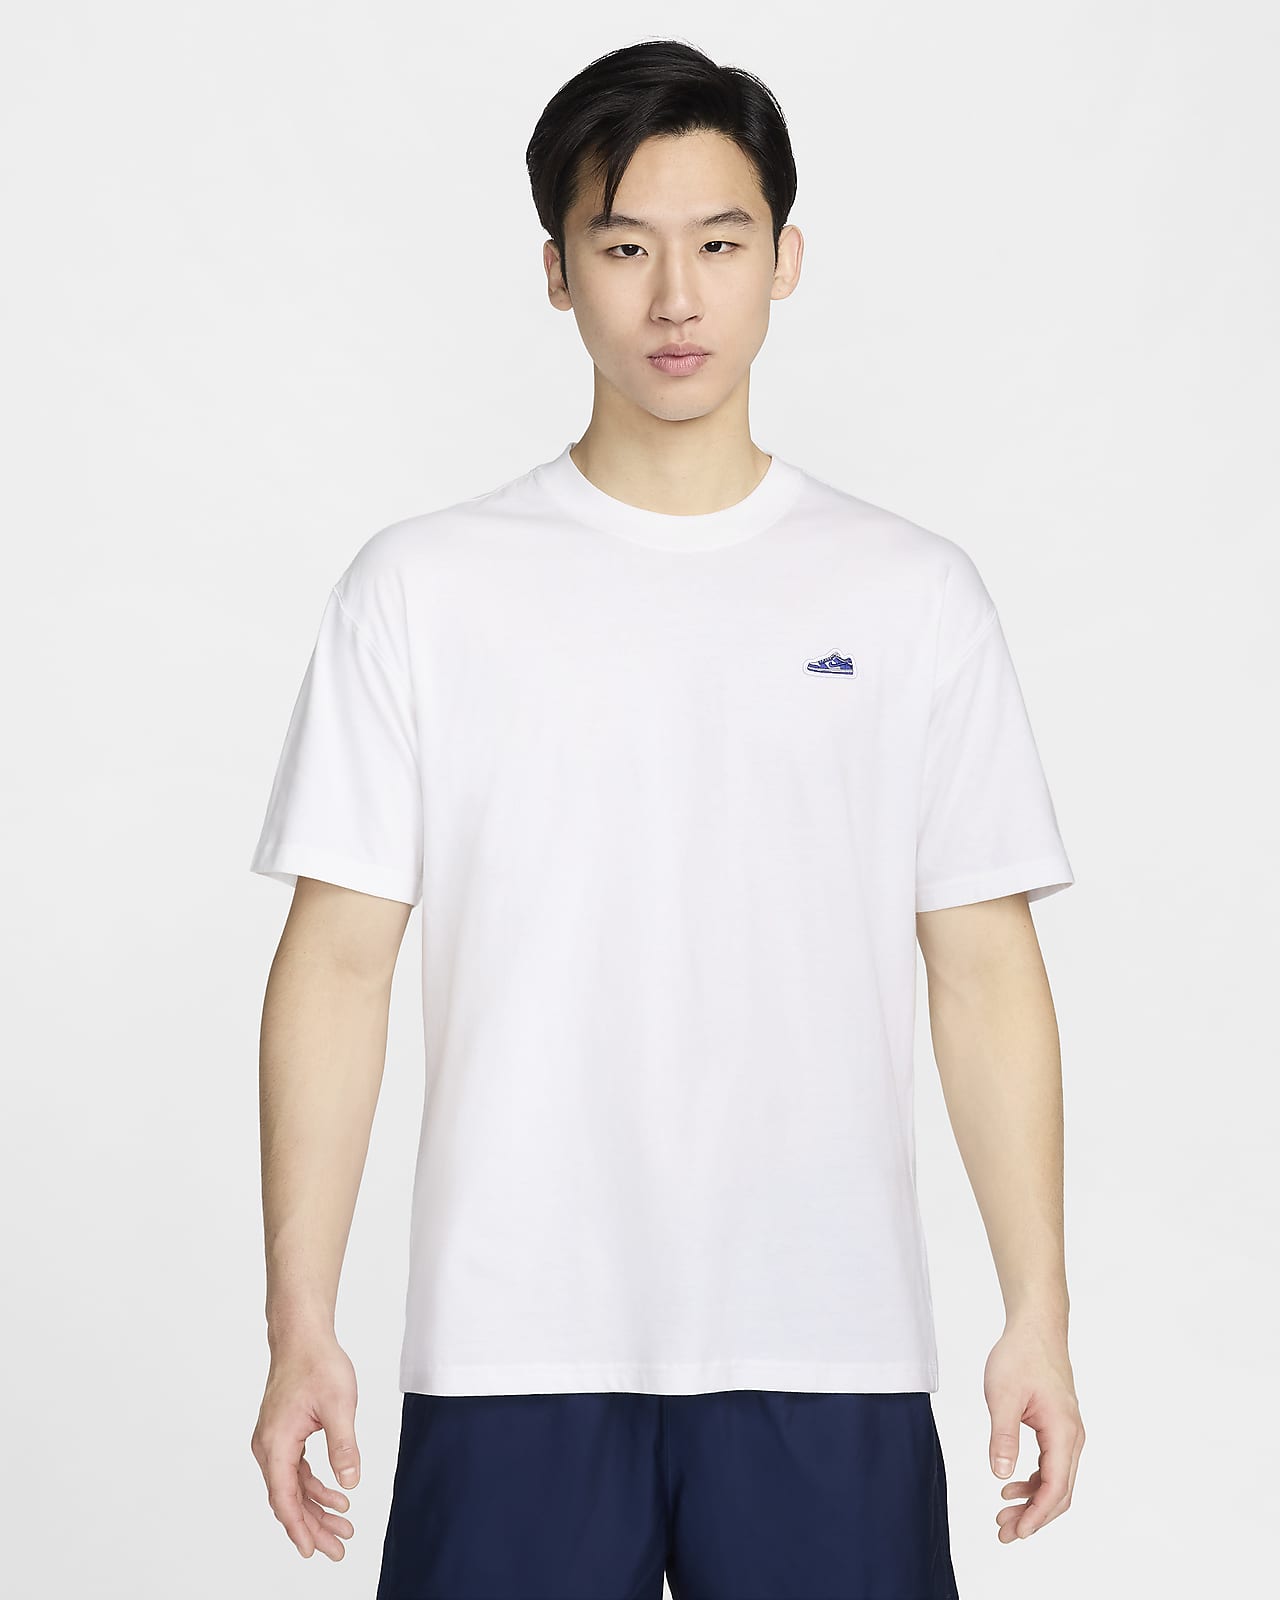 Nike Sportswear 男子宽松版型T恤